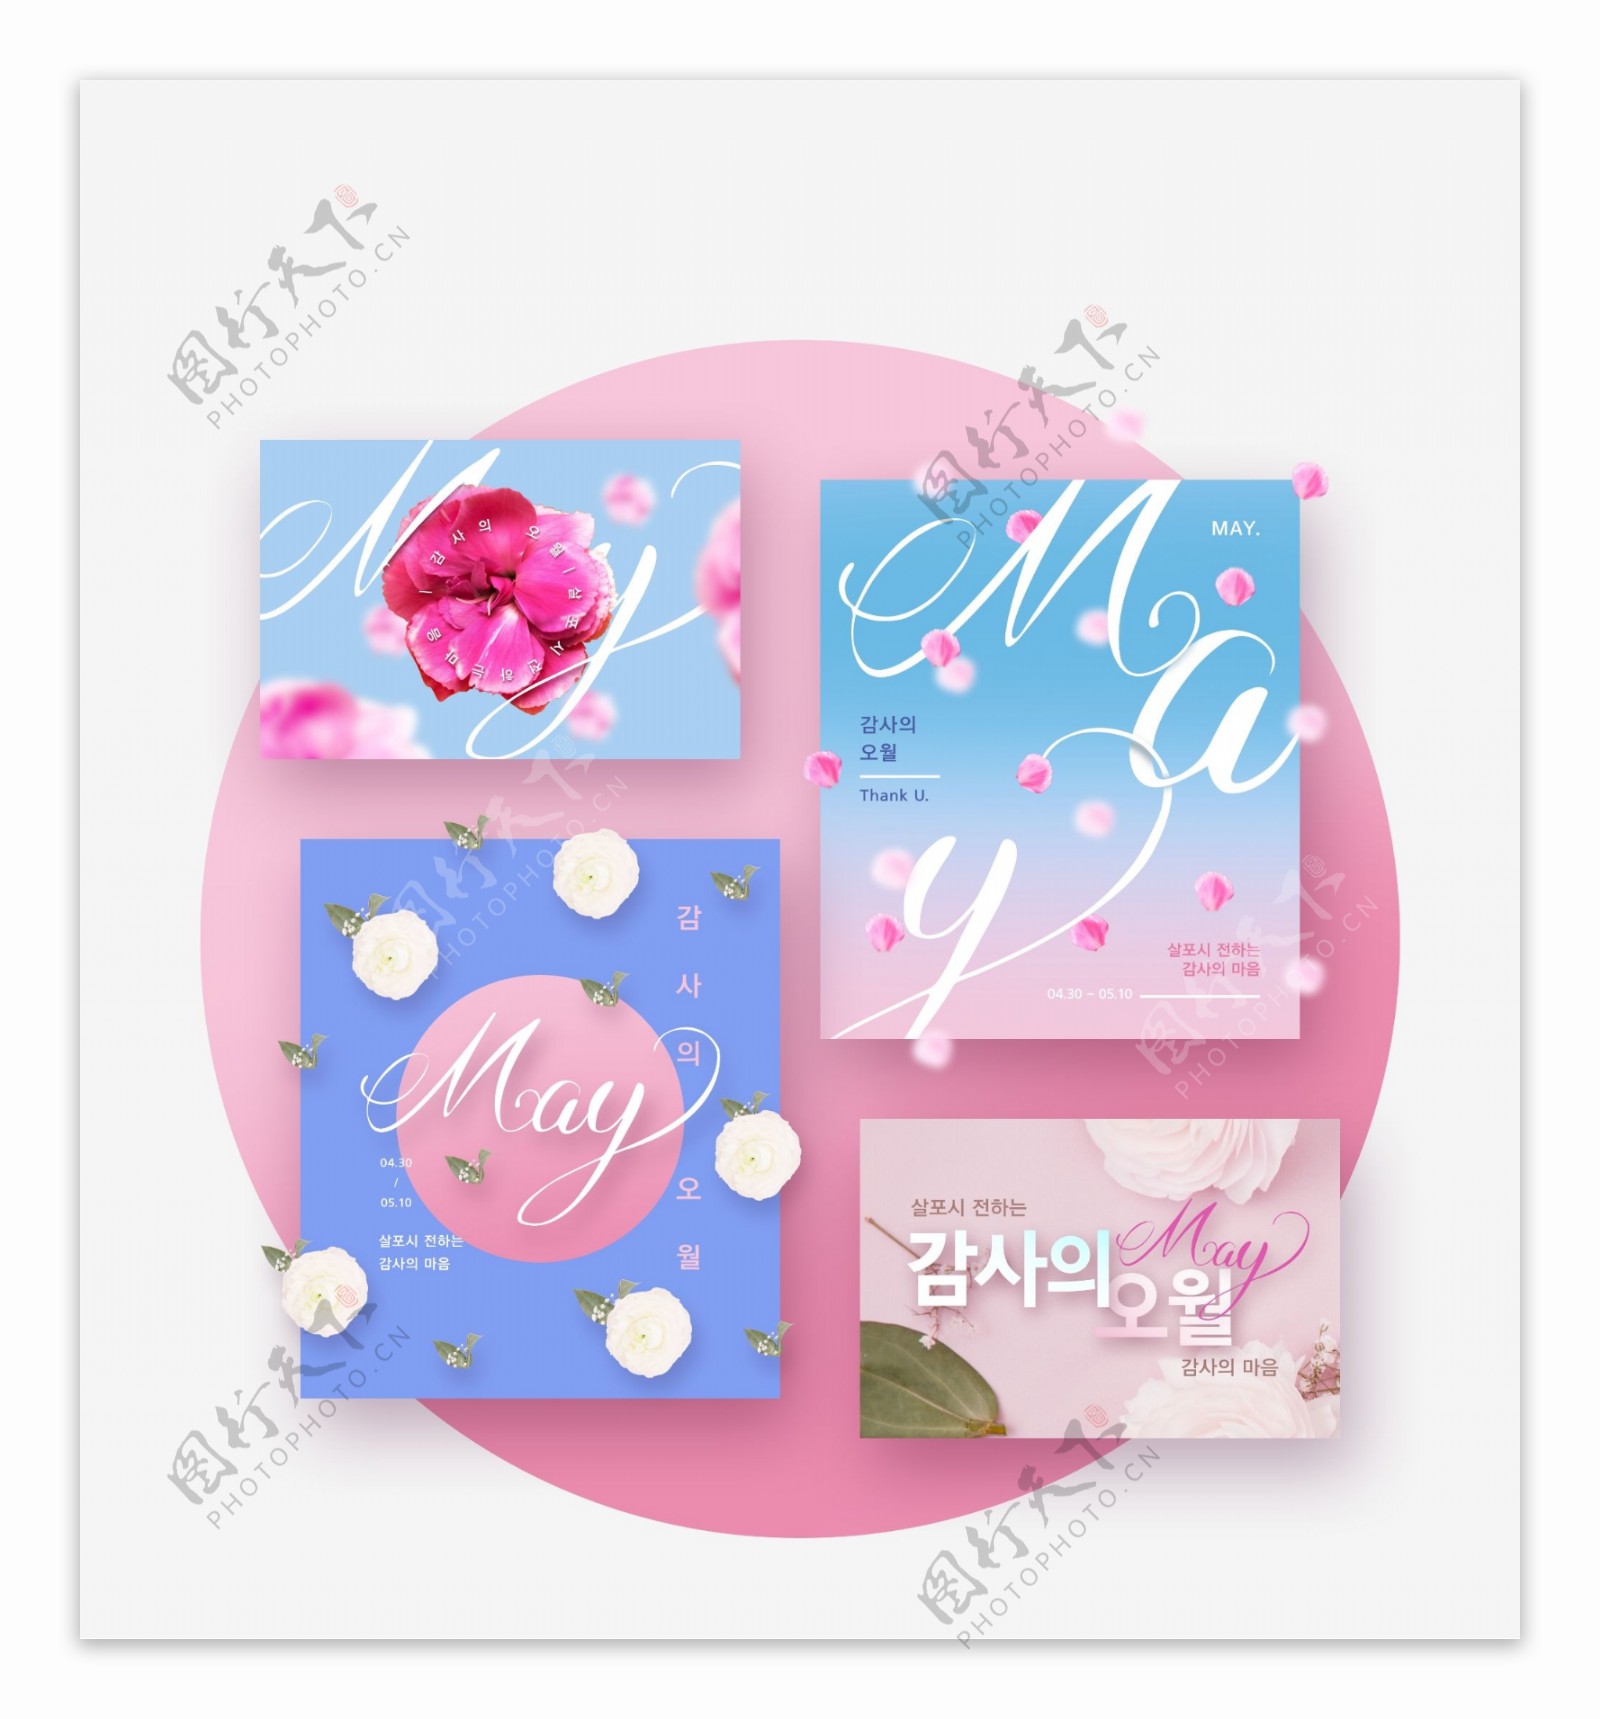 韩式时尚扁平化创意粉色圆形背景促销海报